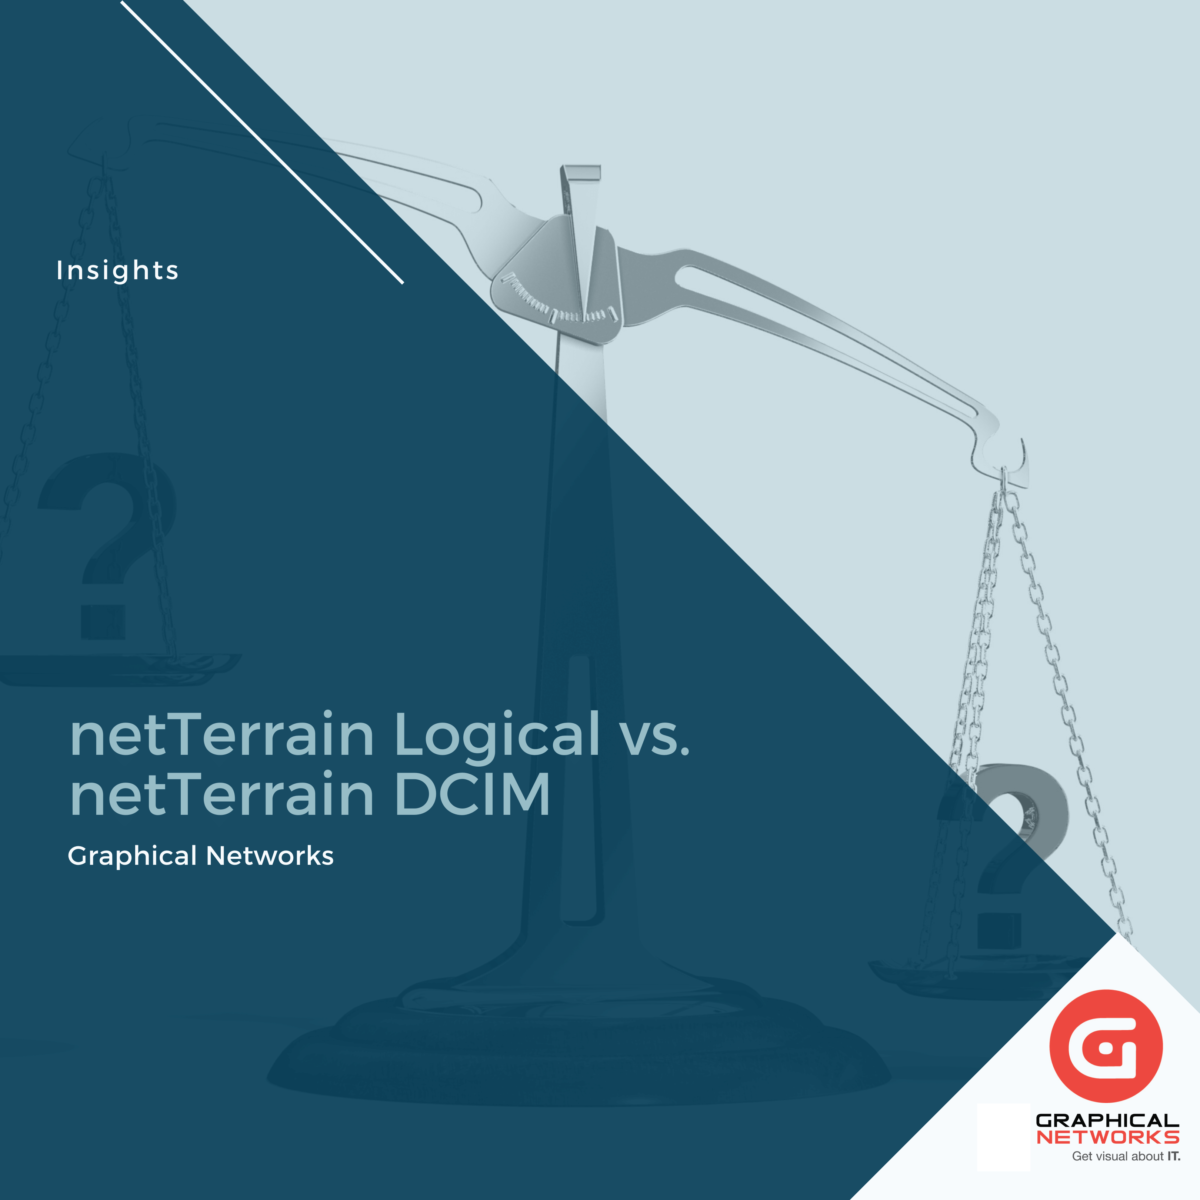 netTerrain Logical vs. netTerrain DCIM